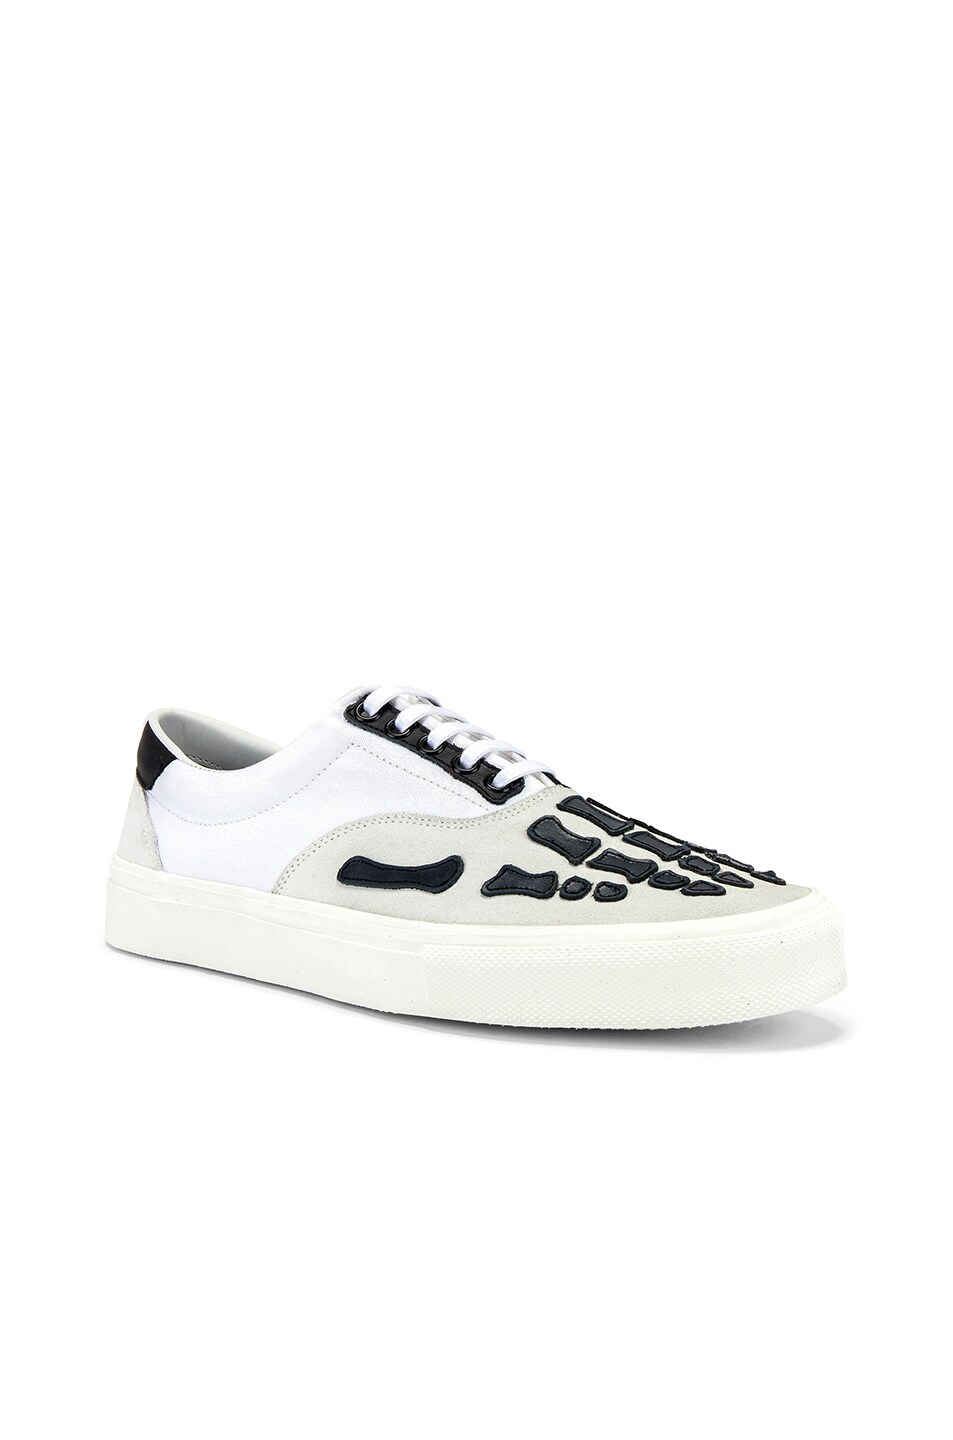 Amiri Skel Toe Lace Up Sneaker in White & Black | FWRD